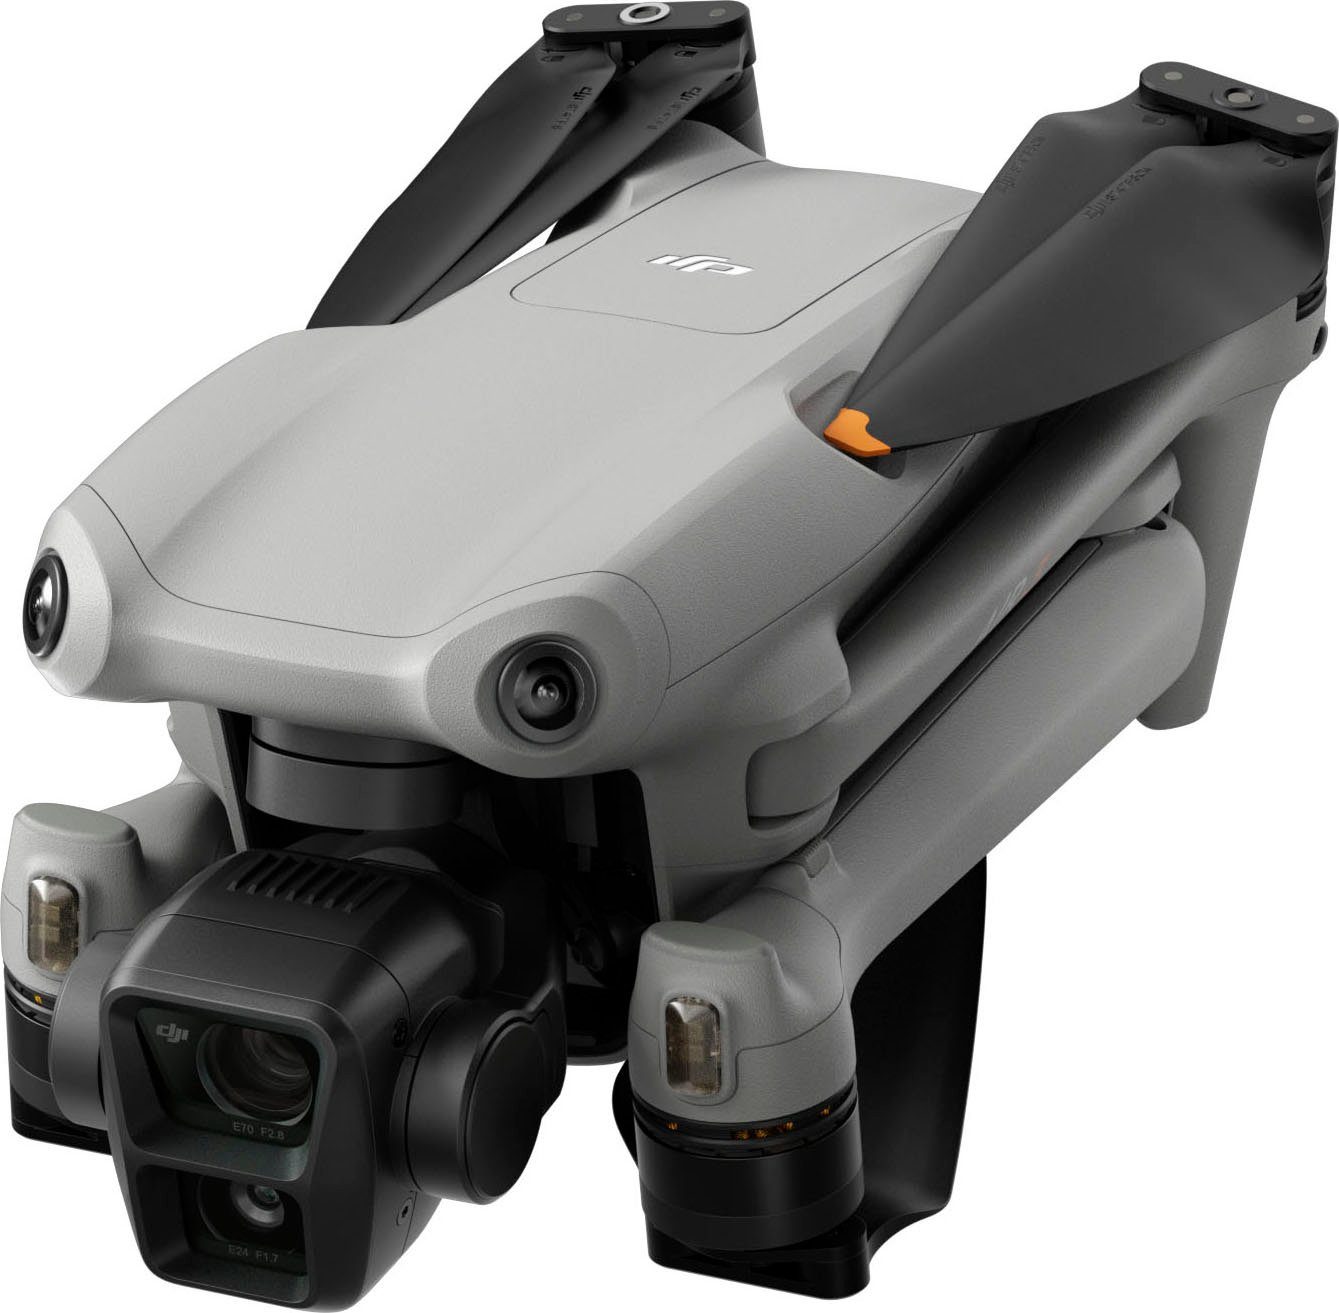 DJI 2) Ultra More Drohne (DJI HD) 3 RC Combo Air Fly (4K